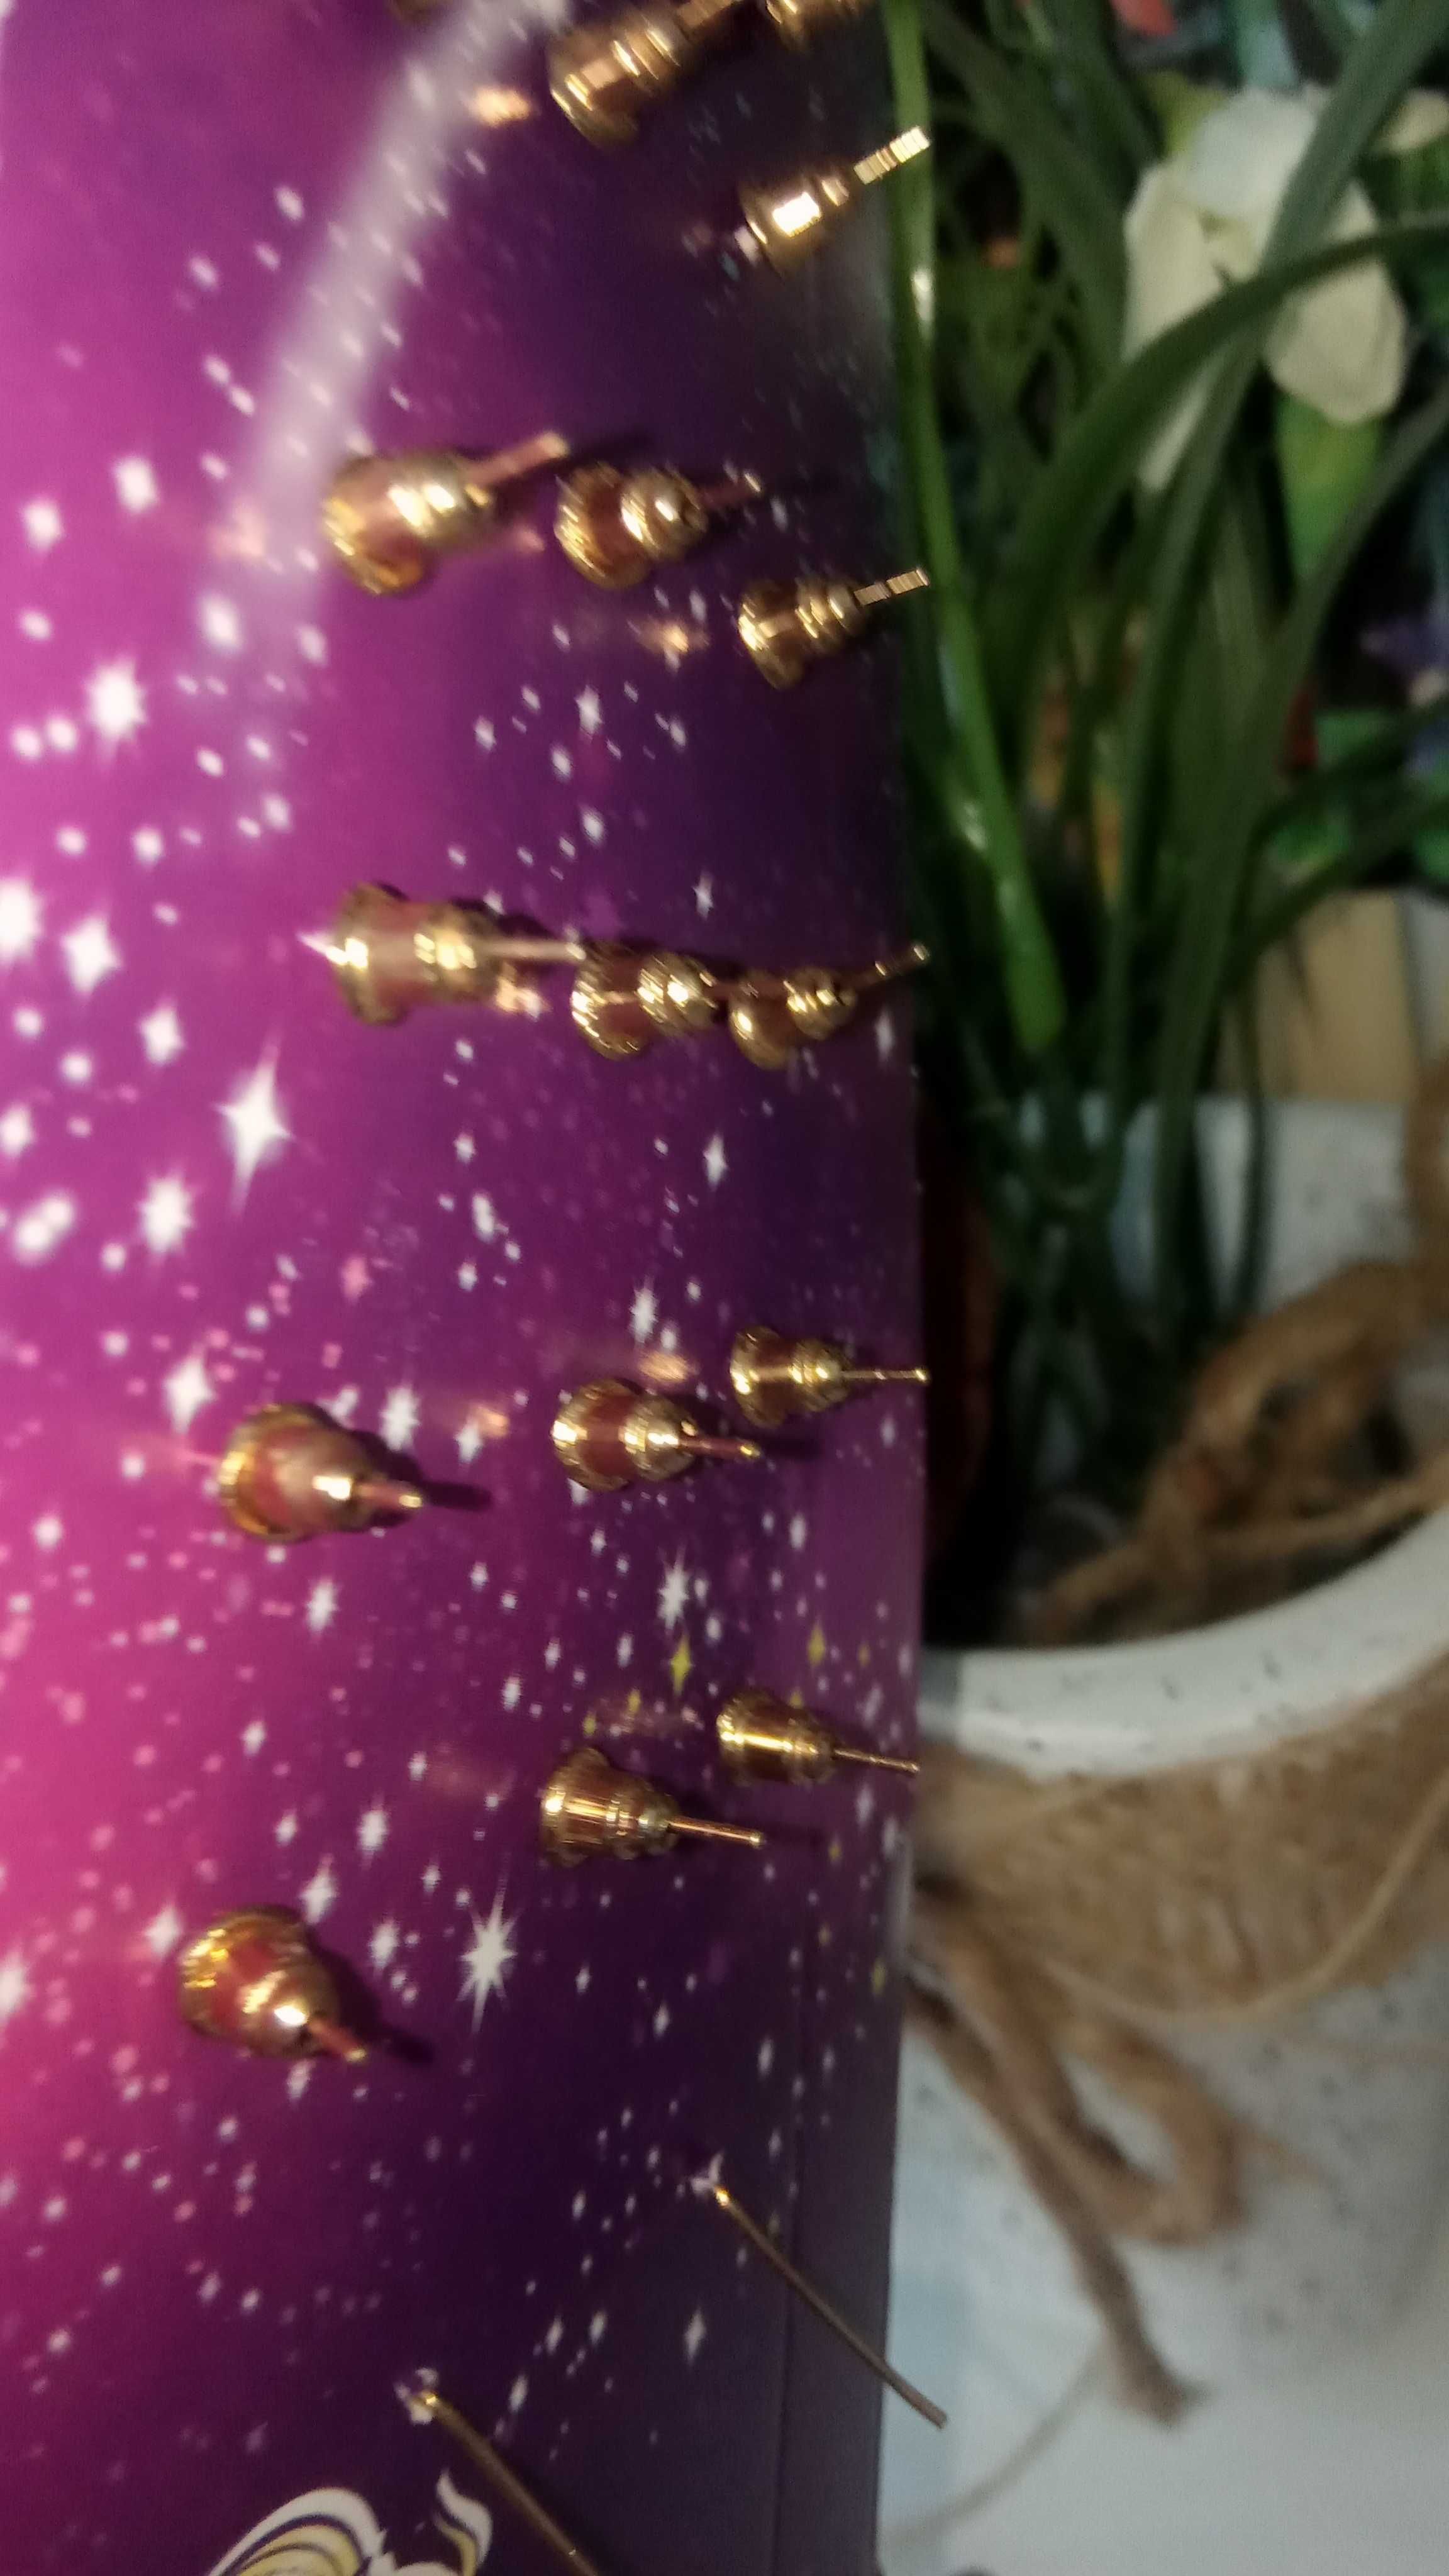 Tanio Zestaw 26 sztuk nowych kolczyków  świątecznych + frotka renifer